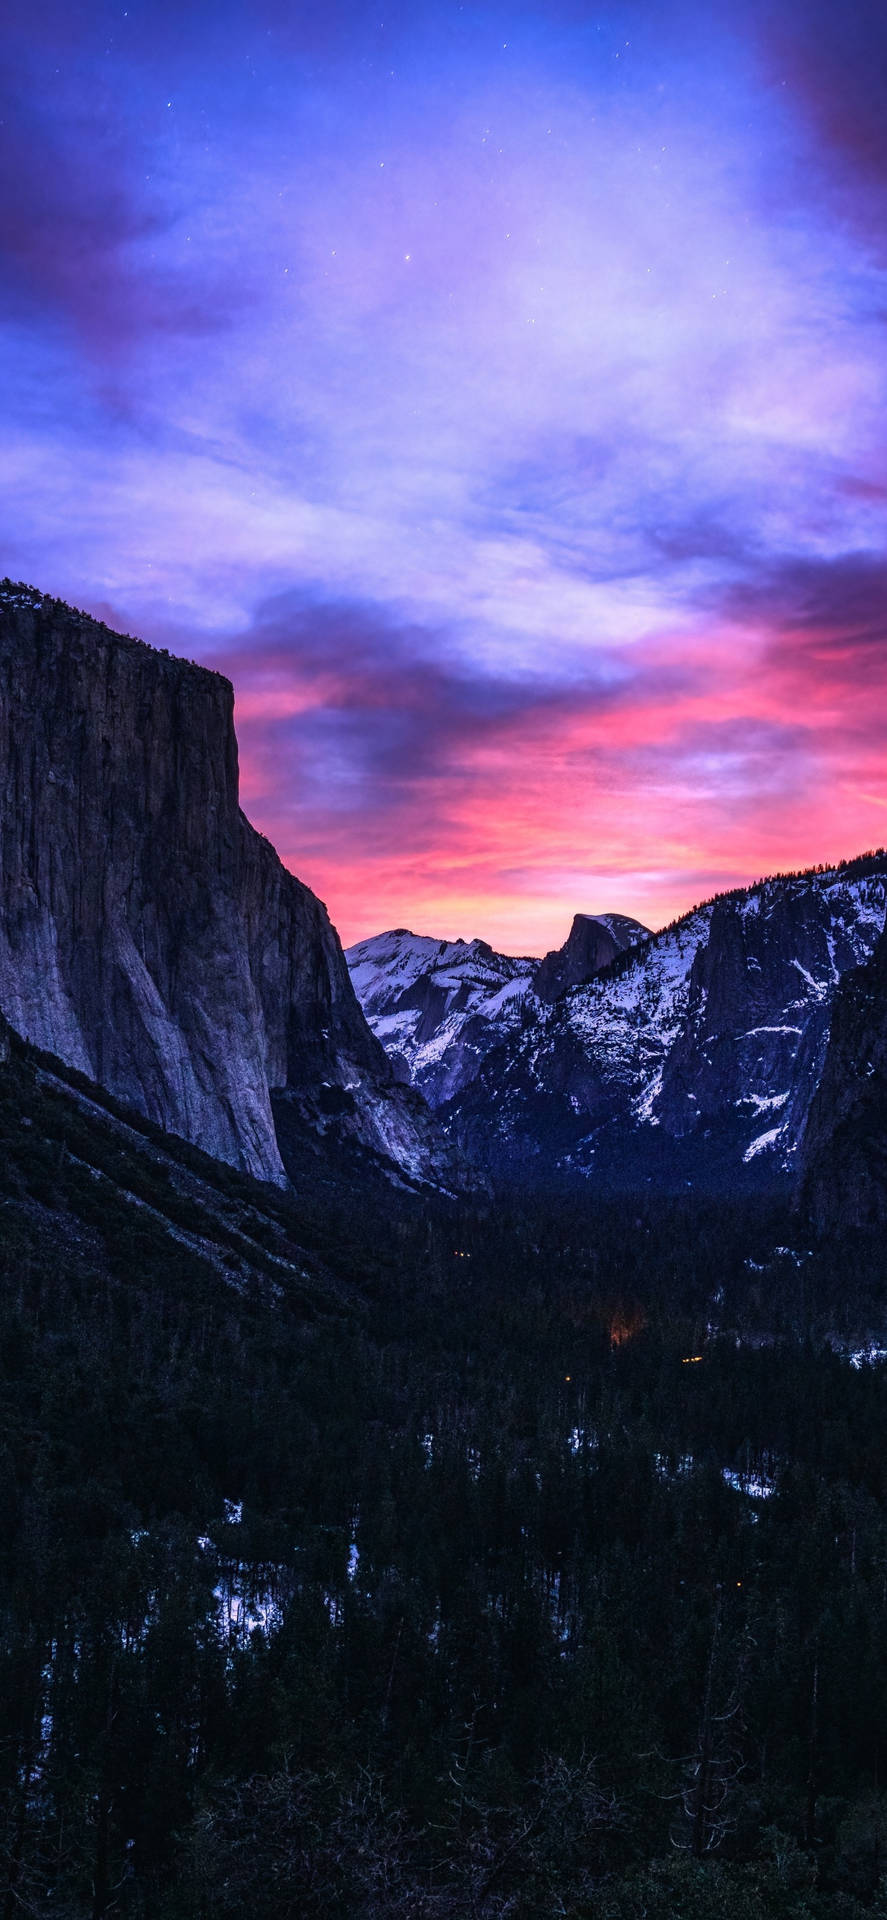 Erlebedie Unglaubliche Schönheit Und Pracht Des Yosemite-nationalparks Auf Deinem Iphone. Wallpaper